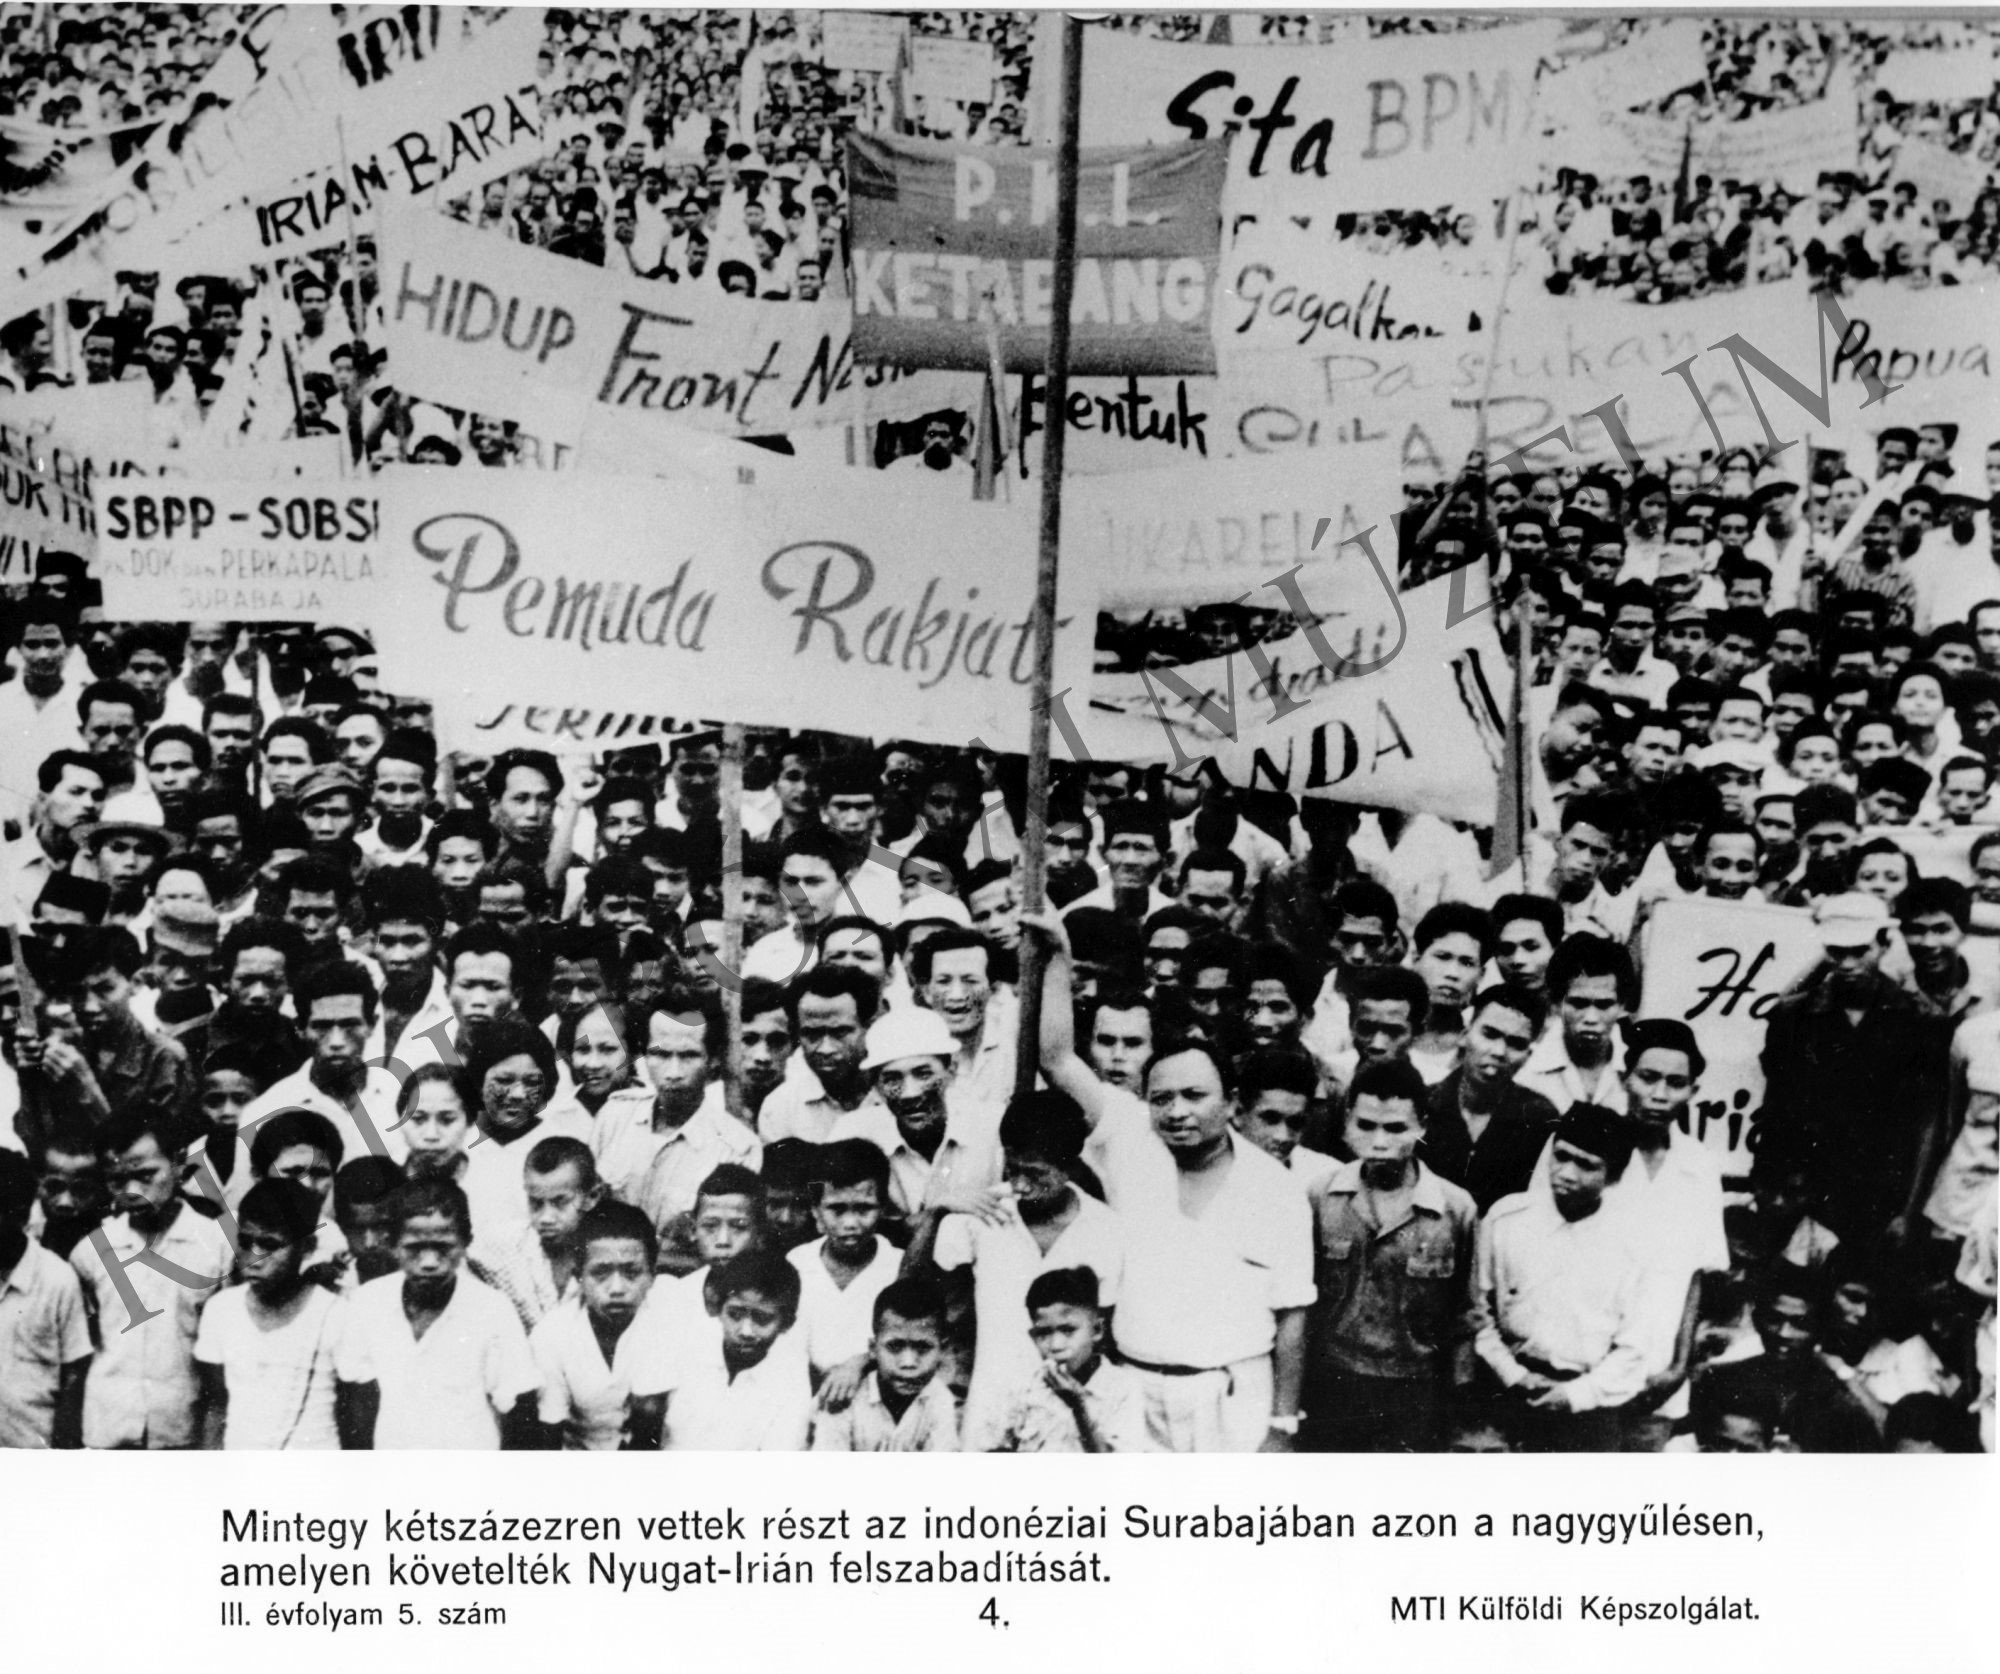 Nagygyűlés az indonéziai Surabajában Nyugat-Irán felszabadításáért. (Rippl-Rónai Múzeum CC BY-NC-SA)